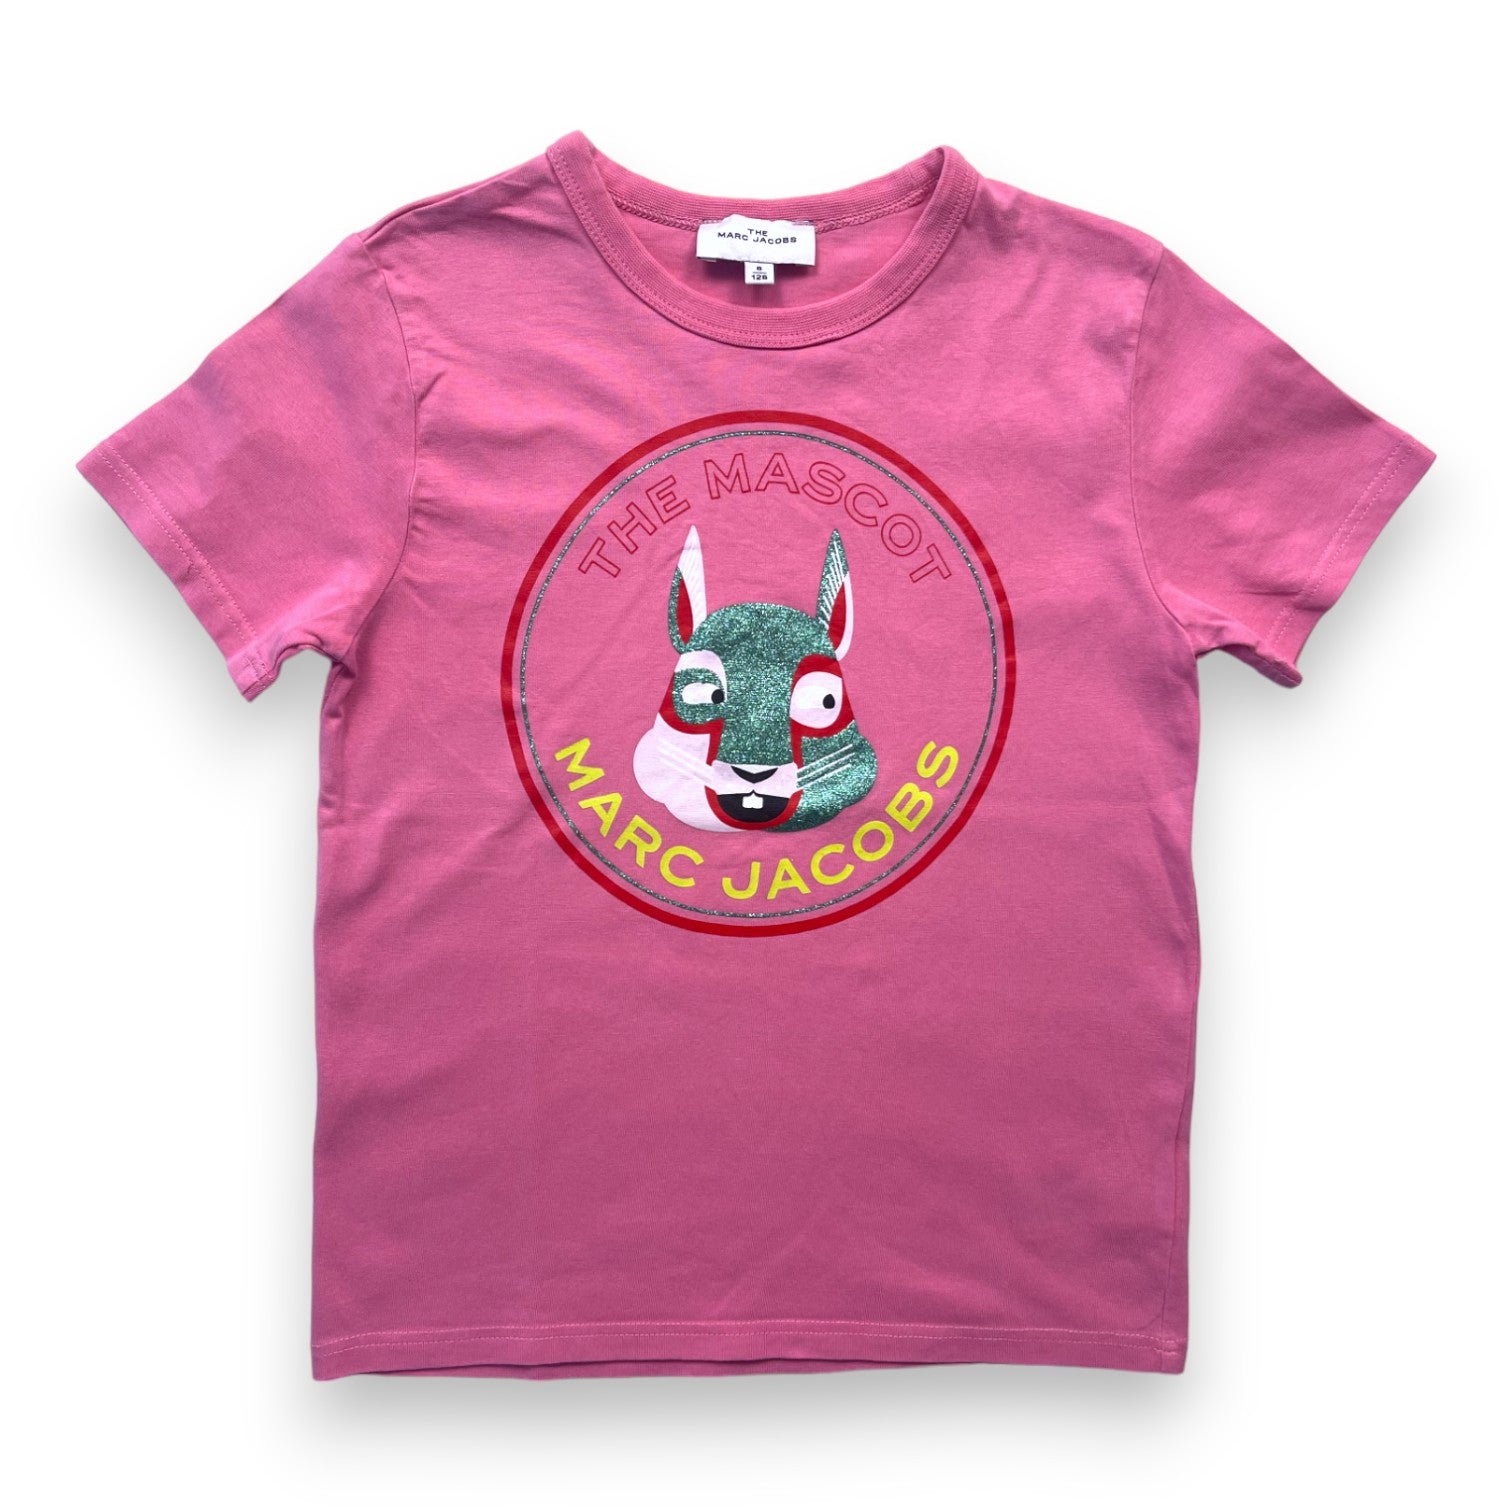 THE MARC JACOBS - T shirt rose imprimé mascotte - 8 ans